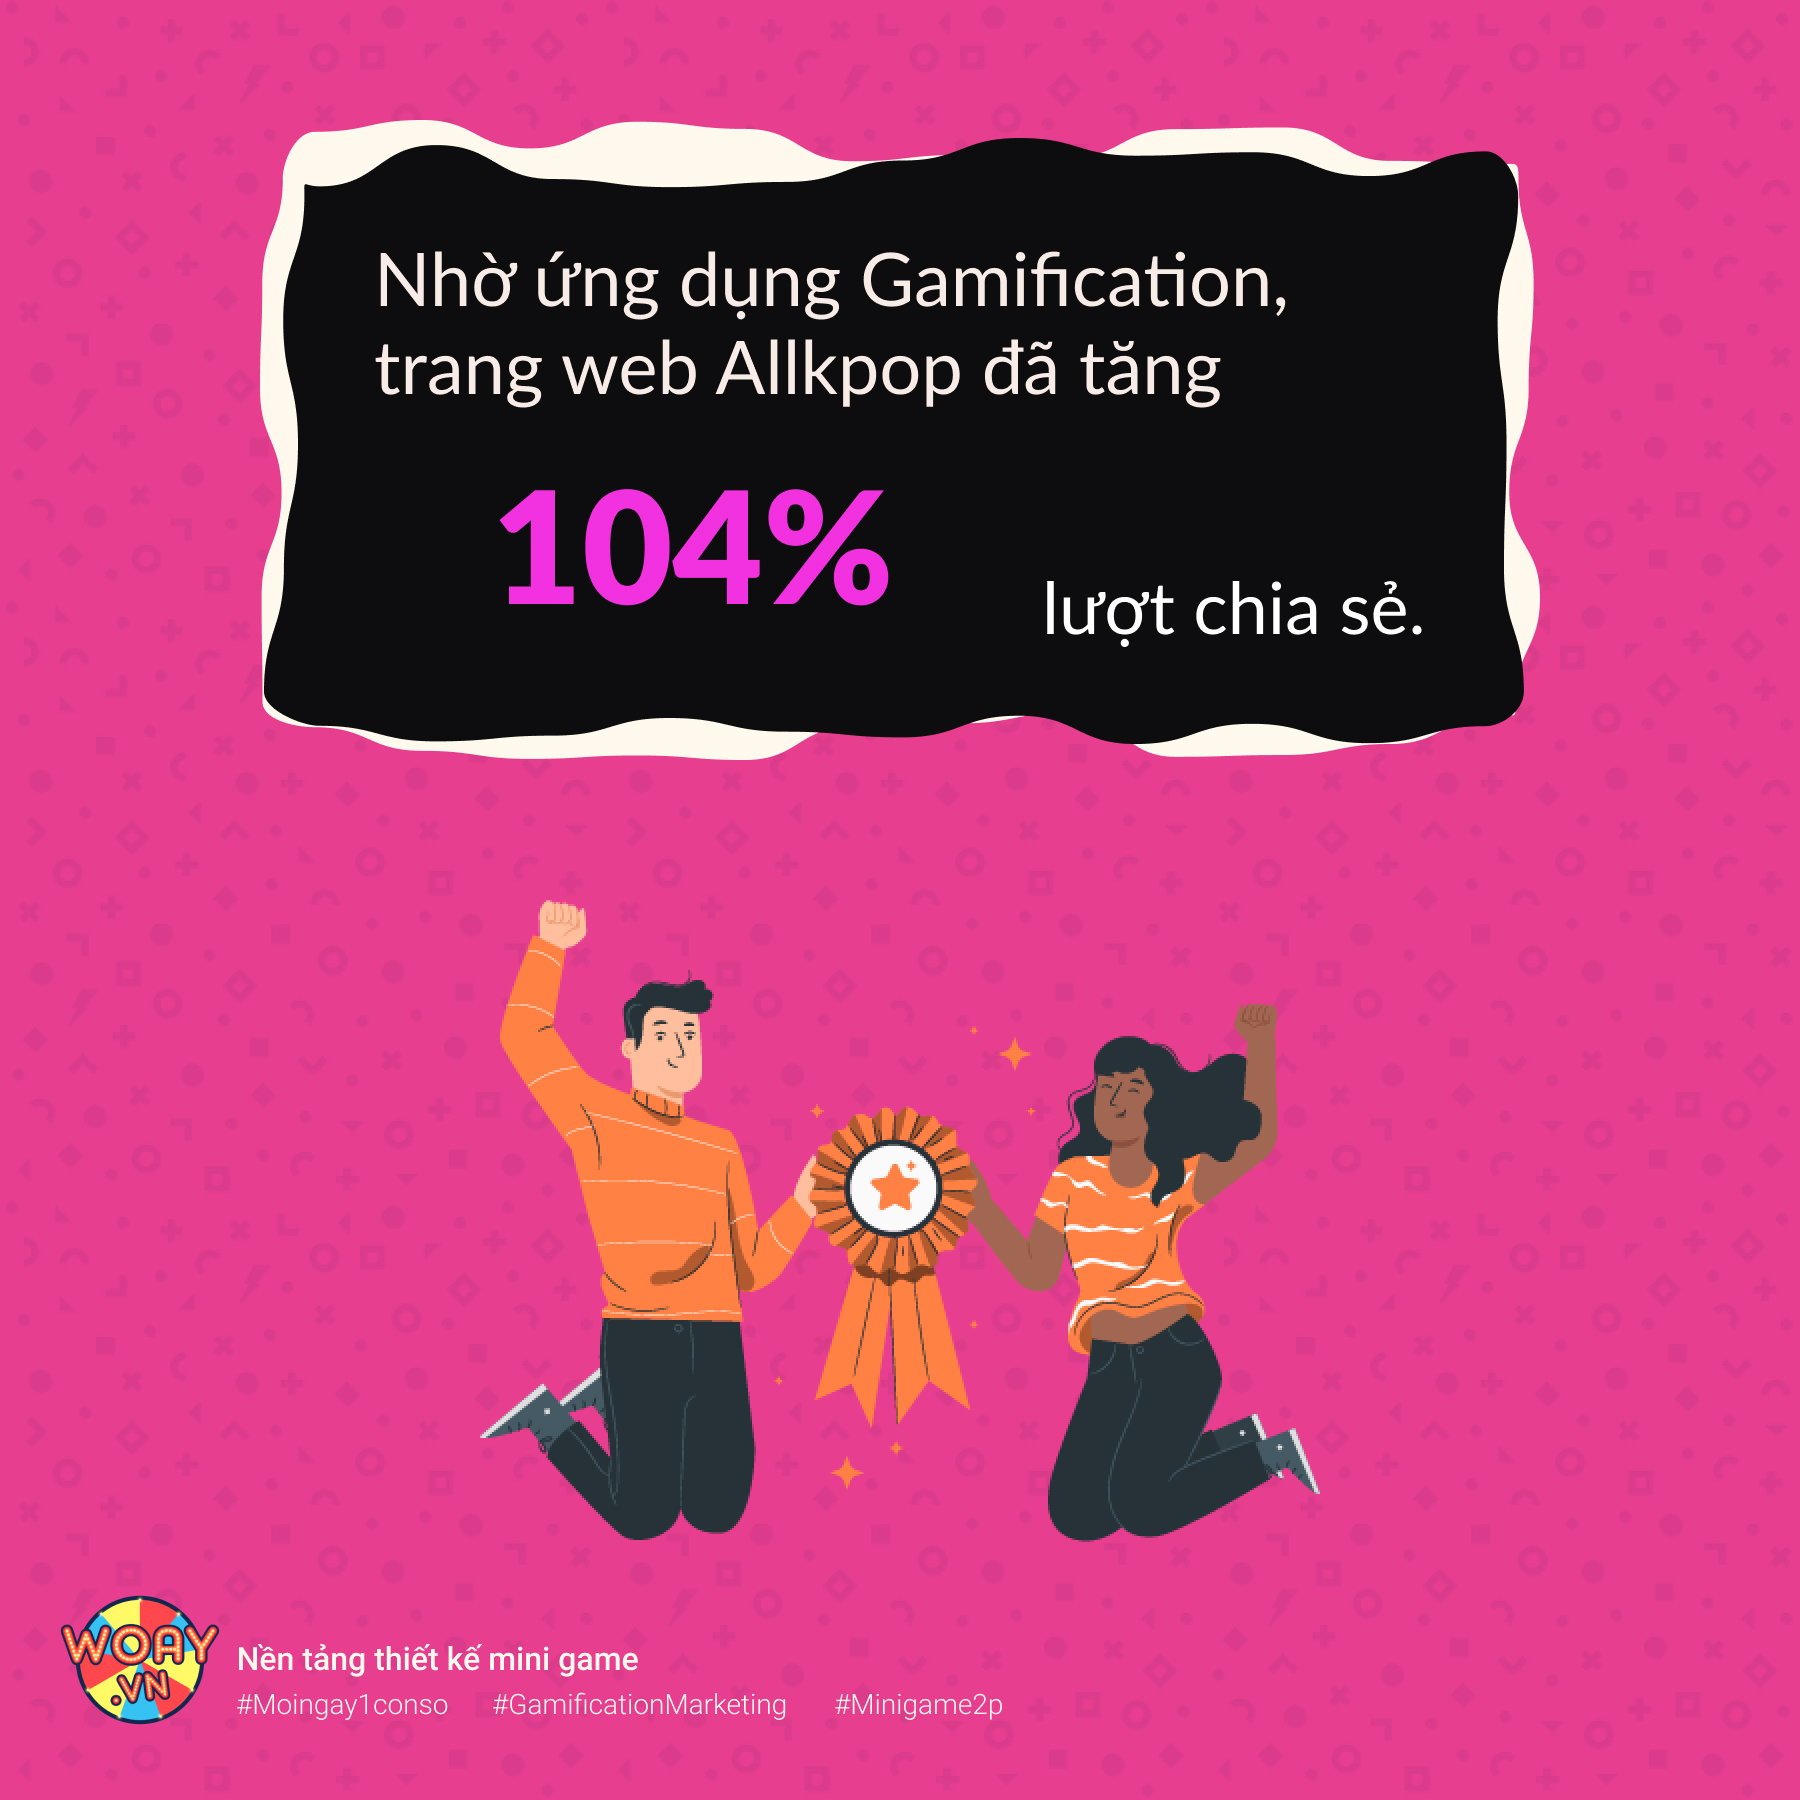 Nhờ ứng dụng Gamification, trang web Allkpop đã tăng 104% lượt chia sẻ